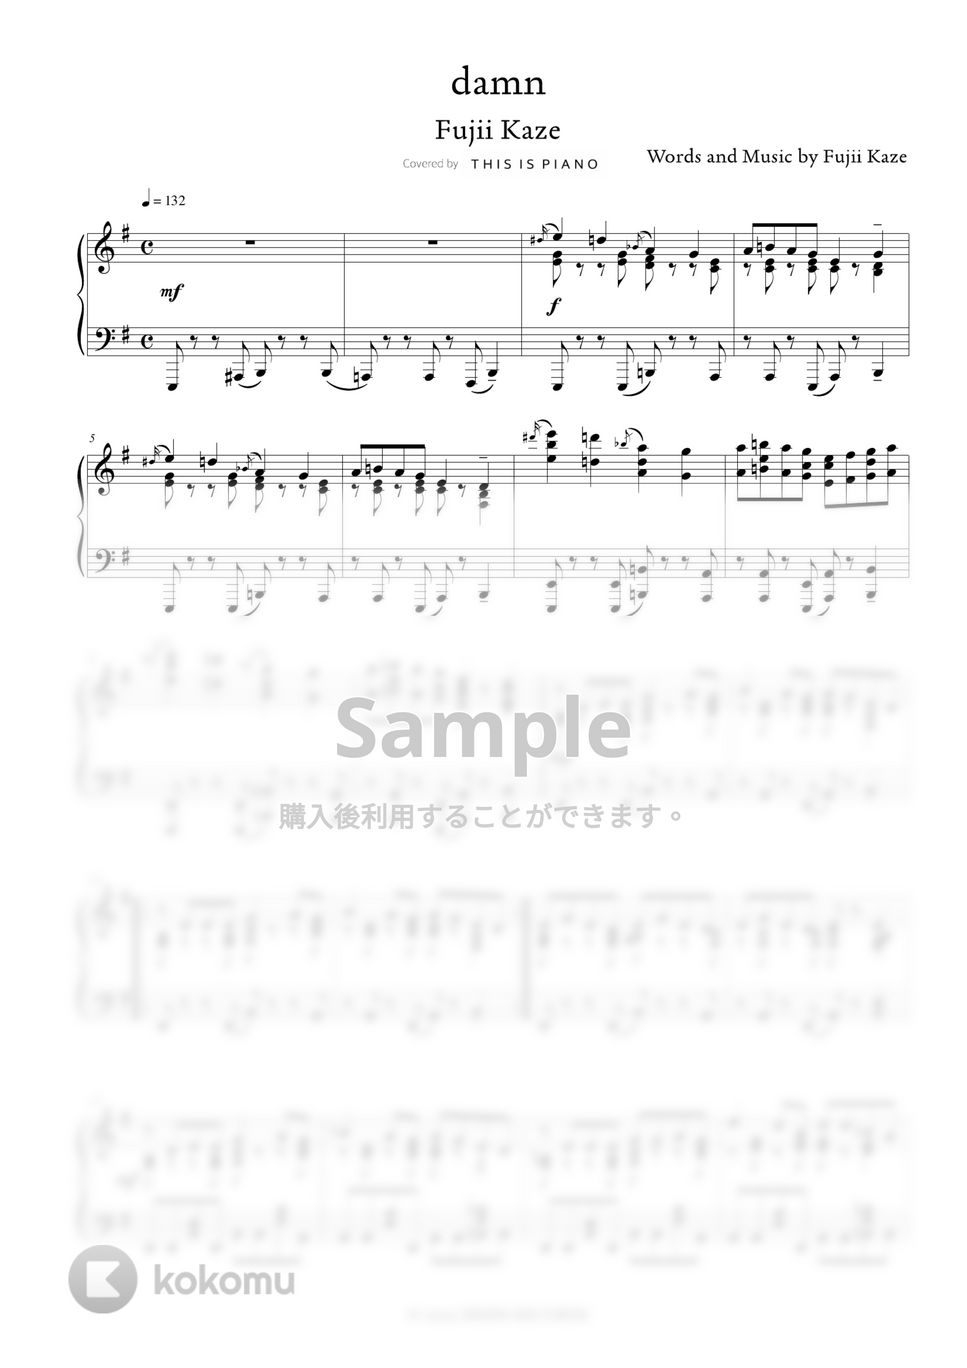 藤井風 - damn by THIS IS PIANO